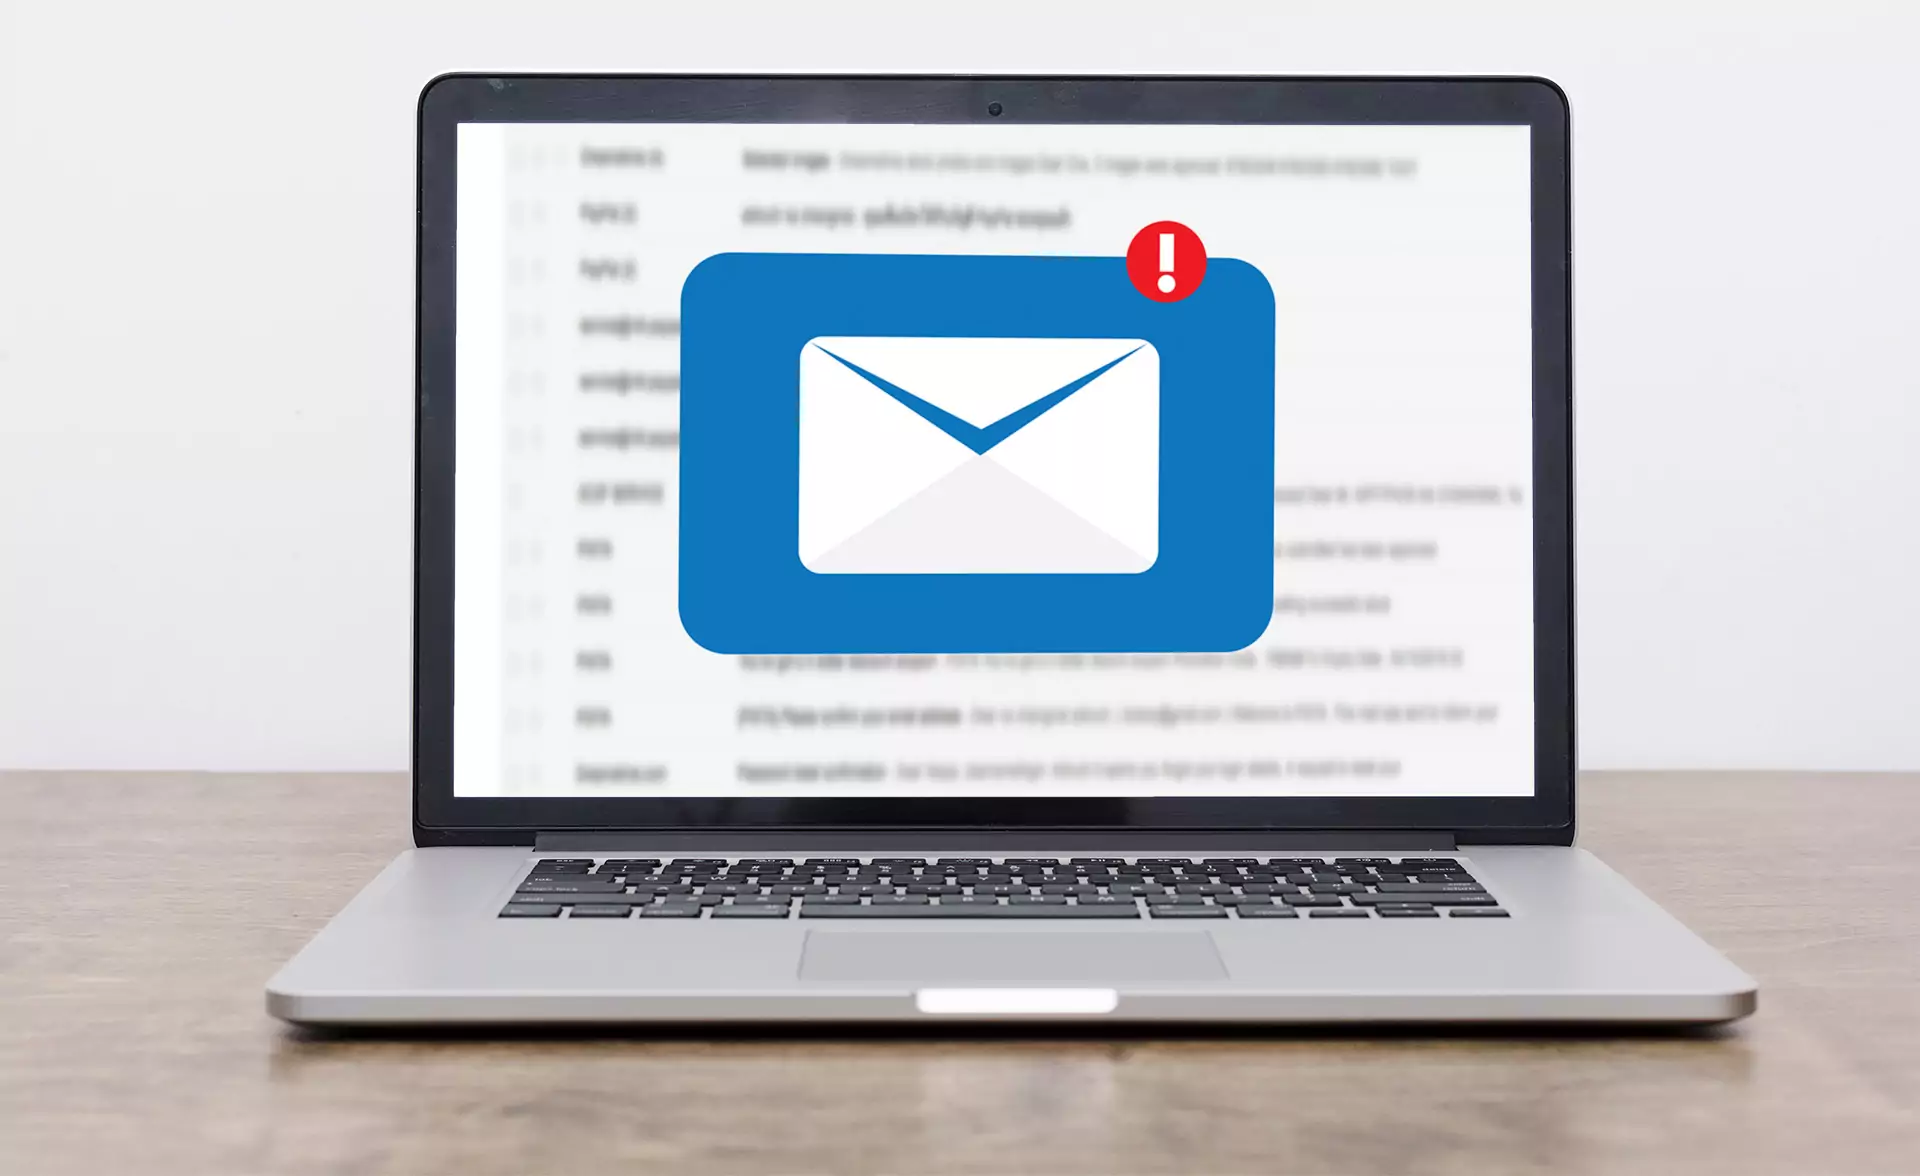 सत्यापन के बाद ईमेल आपका पंजीकरण समाप्त हो जाएगा।